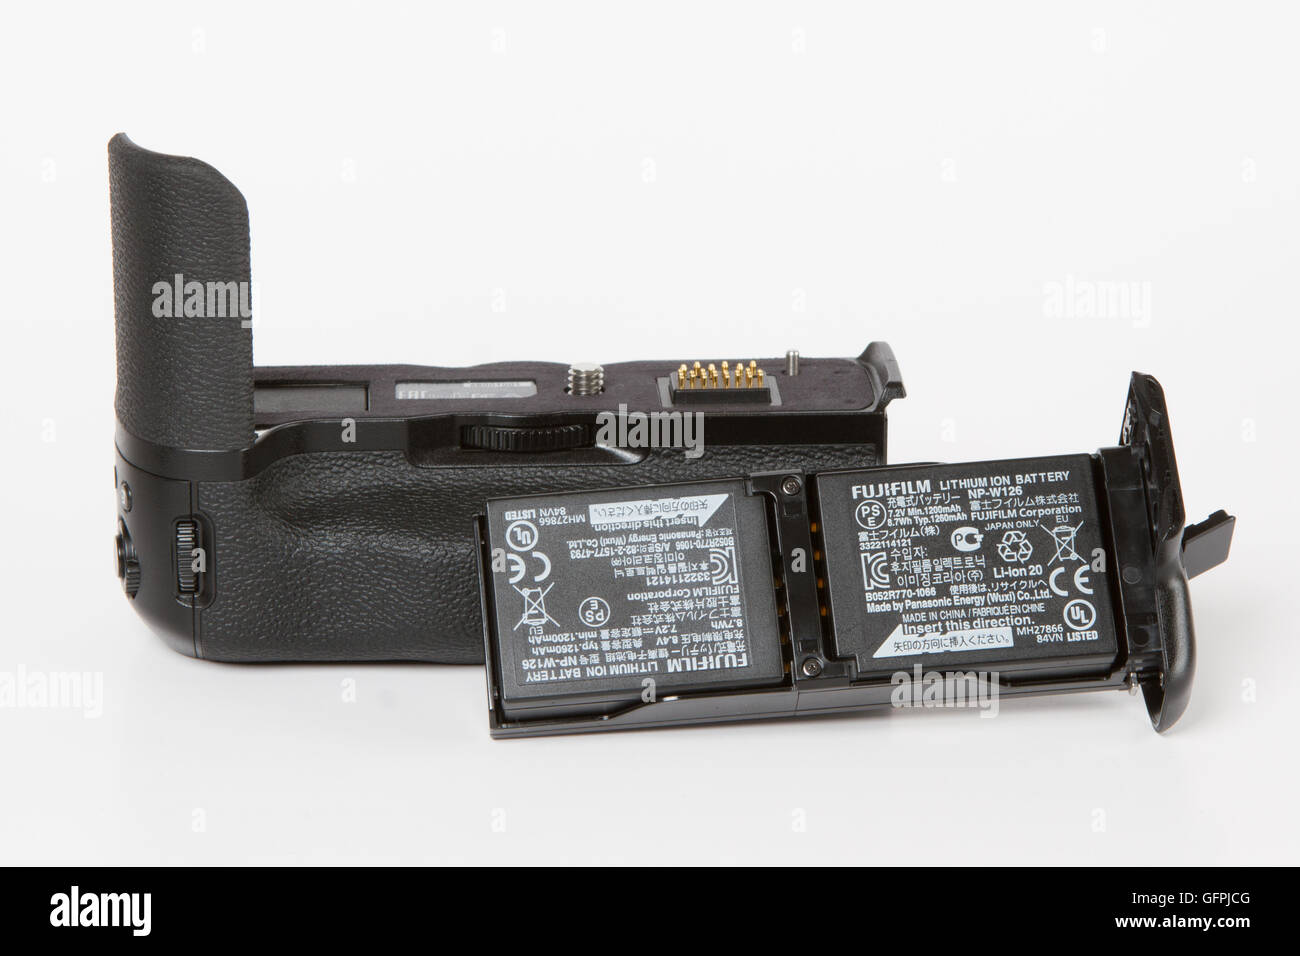 Poignée de batterie supplémentaire avec piles pour FUJIFILM X-T2, 24 mégapixels, caméra vidéo 4K mirrorless sur fond blanc Banque D'Images